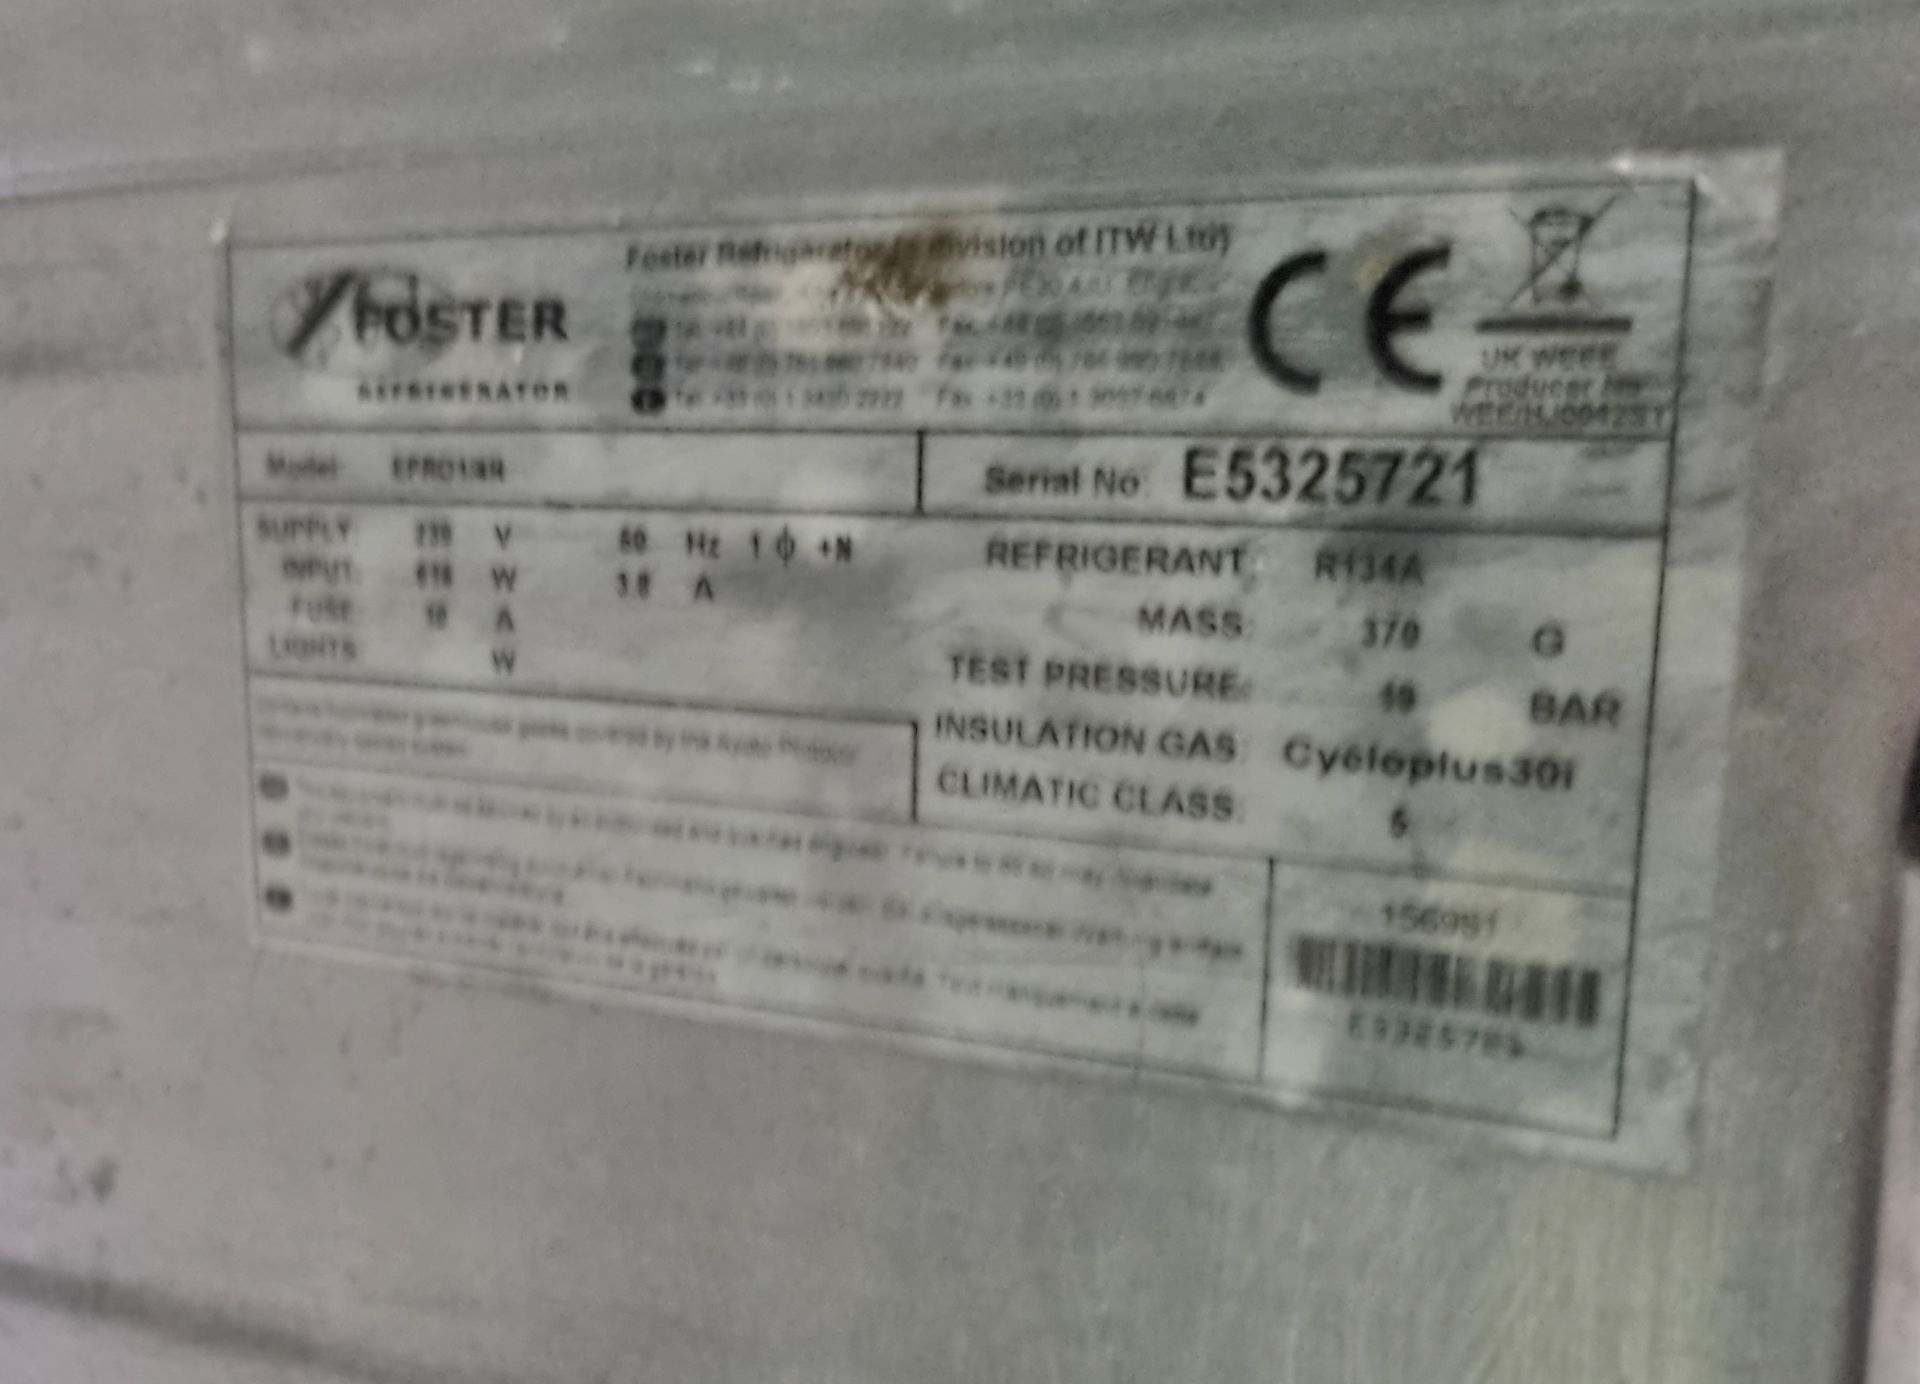 Foster EPRO1/4H refrigerator - L 2320 x W 700 x H 830mm - 4 door - Bild 4 aus 6